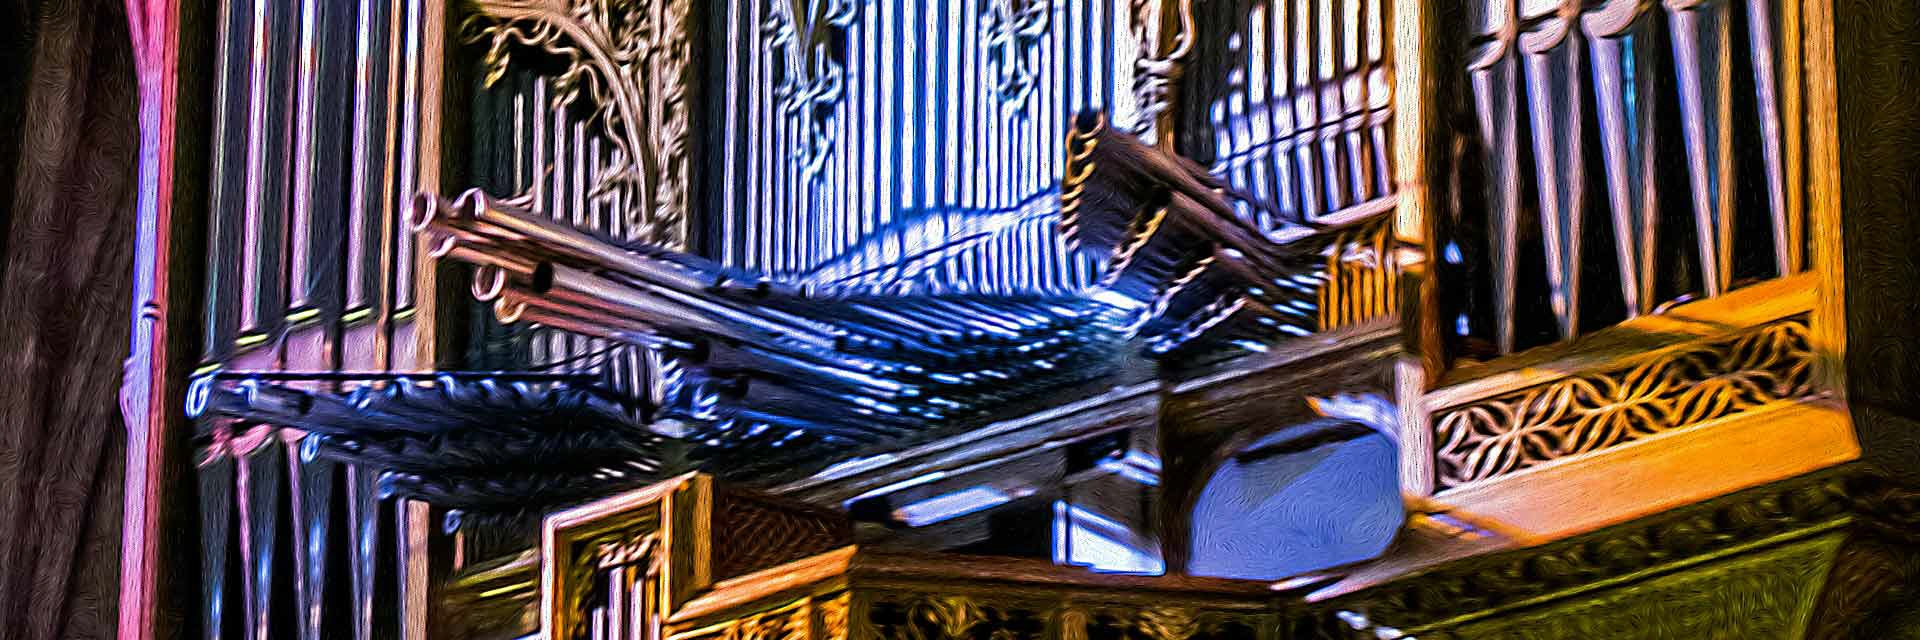 Palma - hist. spanische Orgel